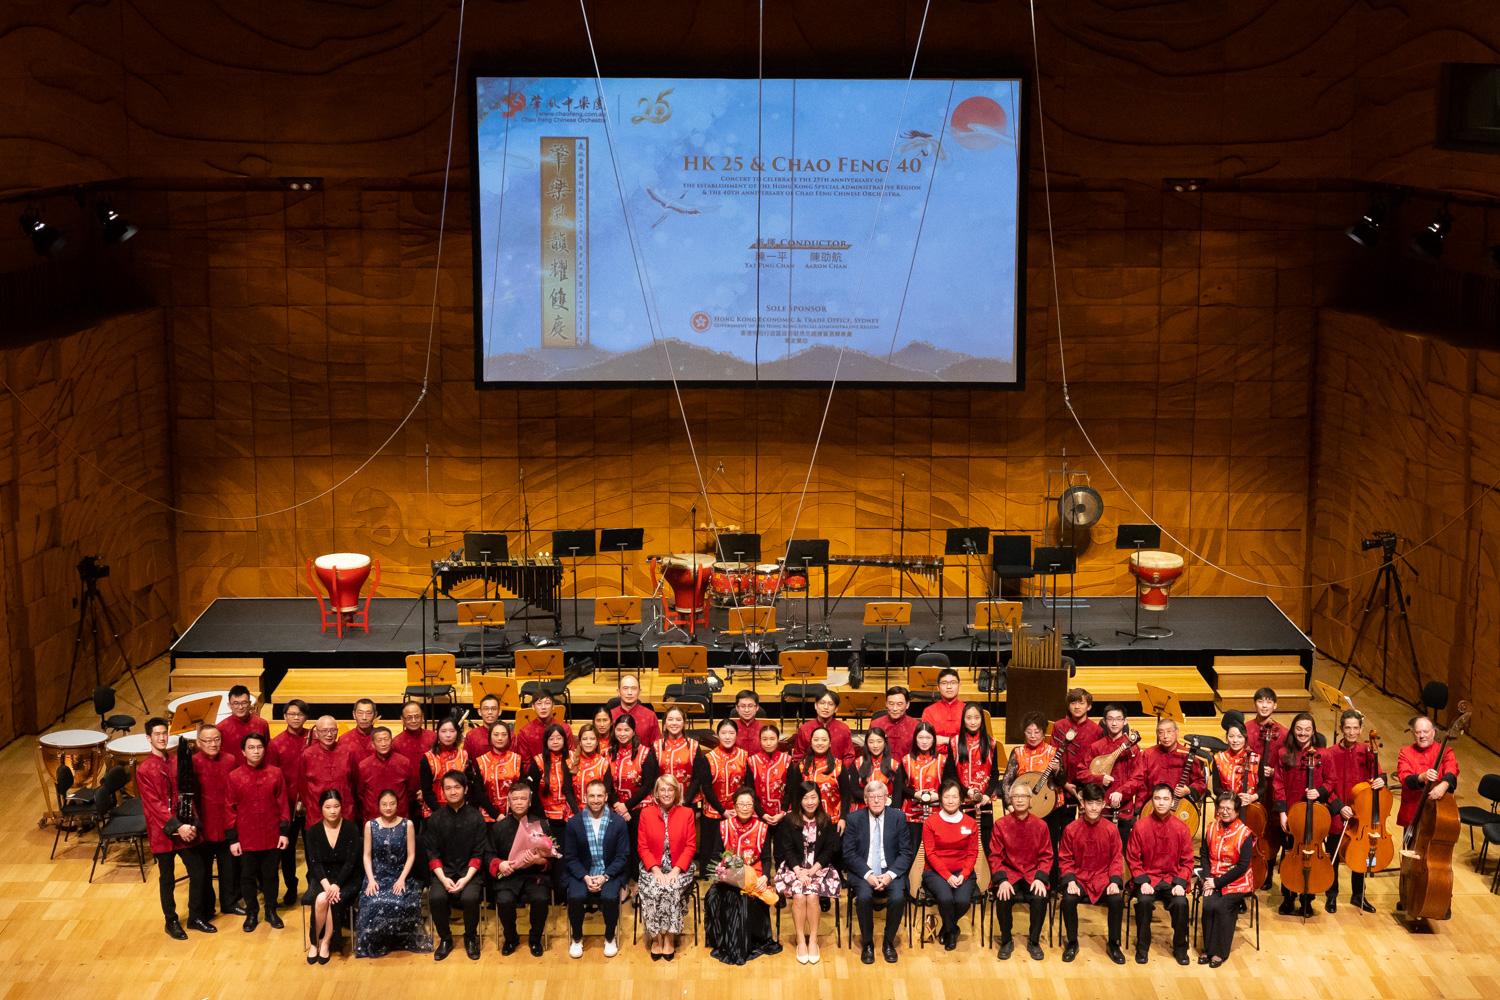 香港駐悉尼經濟貿易辦事處（悉尼經貿辦）昨日（九月四日）在澳洲墨爾本舉行《肇樂風韻耀雙慶》中樂音樂會，慶祝香港特別行政區成立25周年，並推廣傳統中樂。圖示墨爾本市長Sally Capp（第一排左六）、悉尼經貿辦處長林美儀（第一排右七）和維多利亞州立法會議員Bruce Atkinson（第一排右六）與其他嘉賓和肇風中樂團合照。